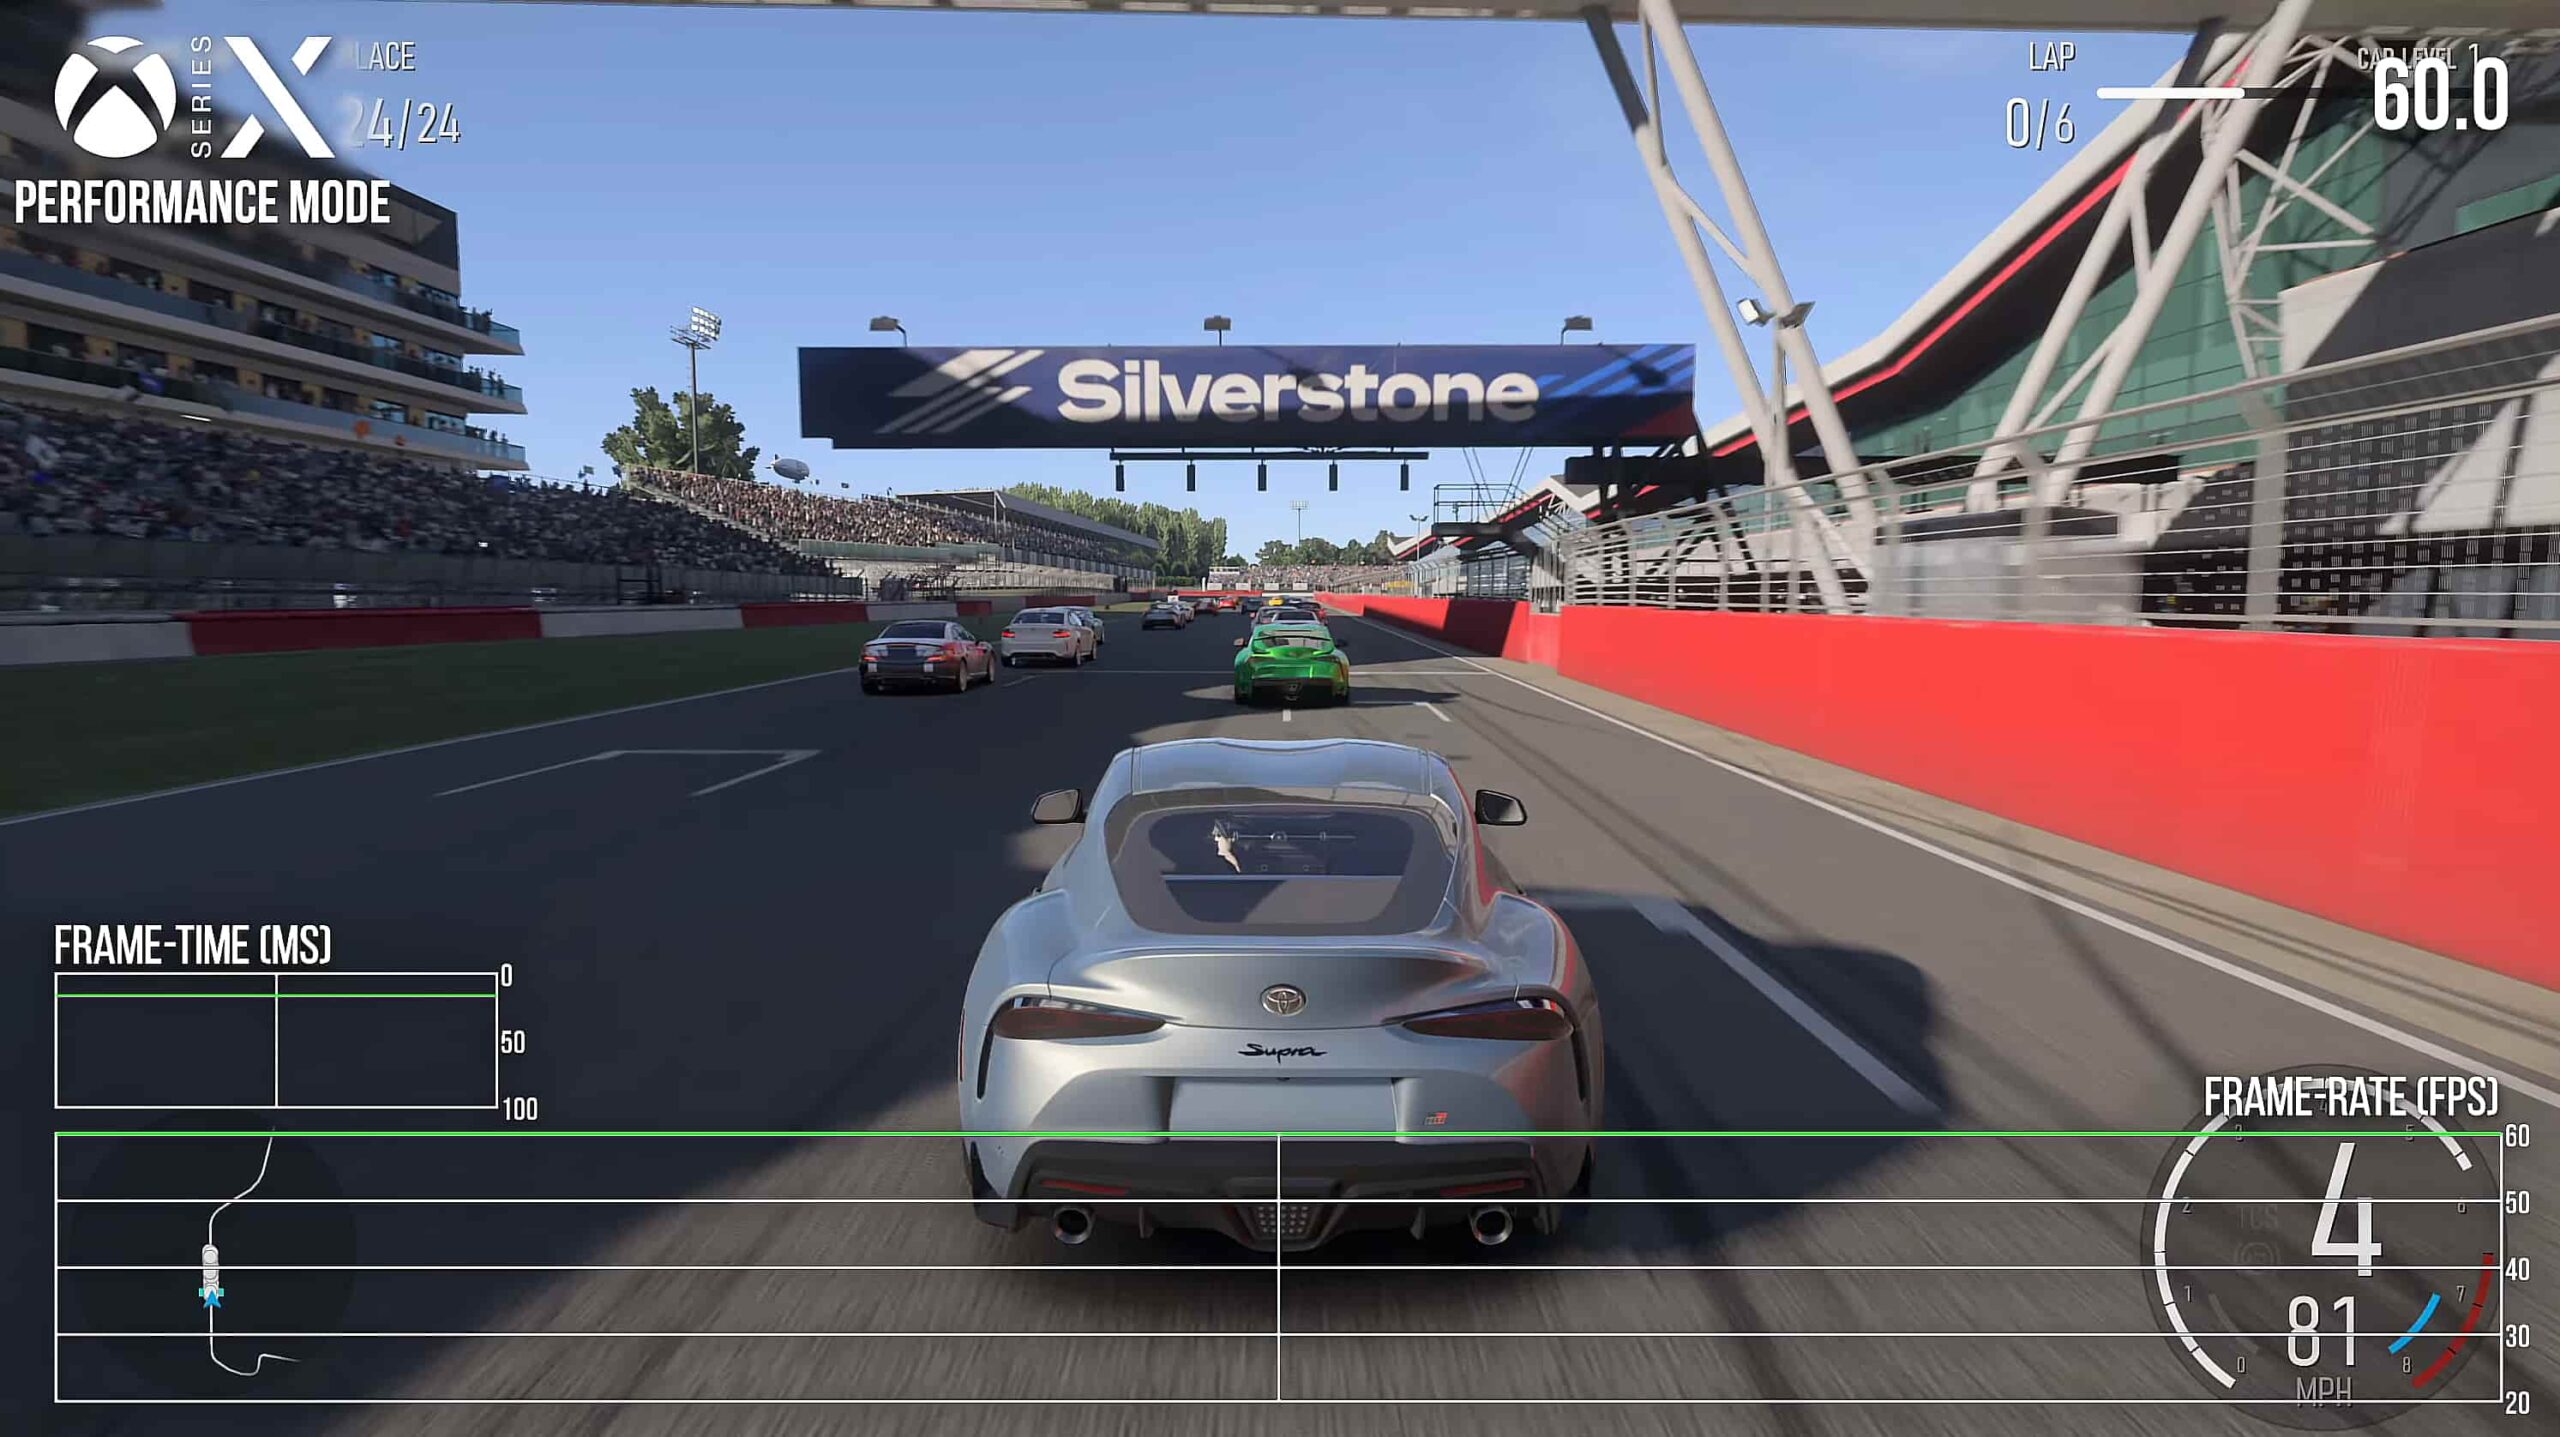 Forza Motorsport 6 mostra mais carros e corrida em novas imagens